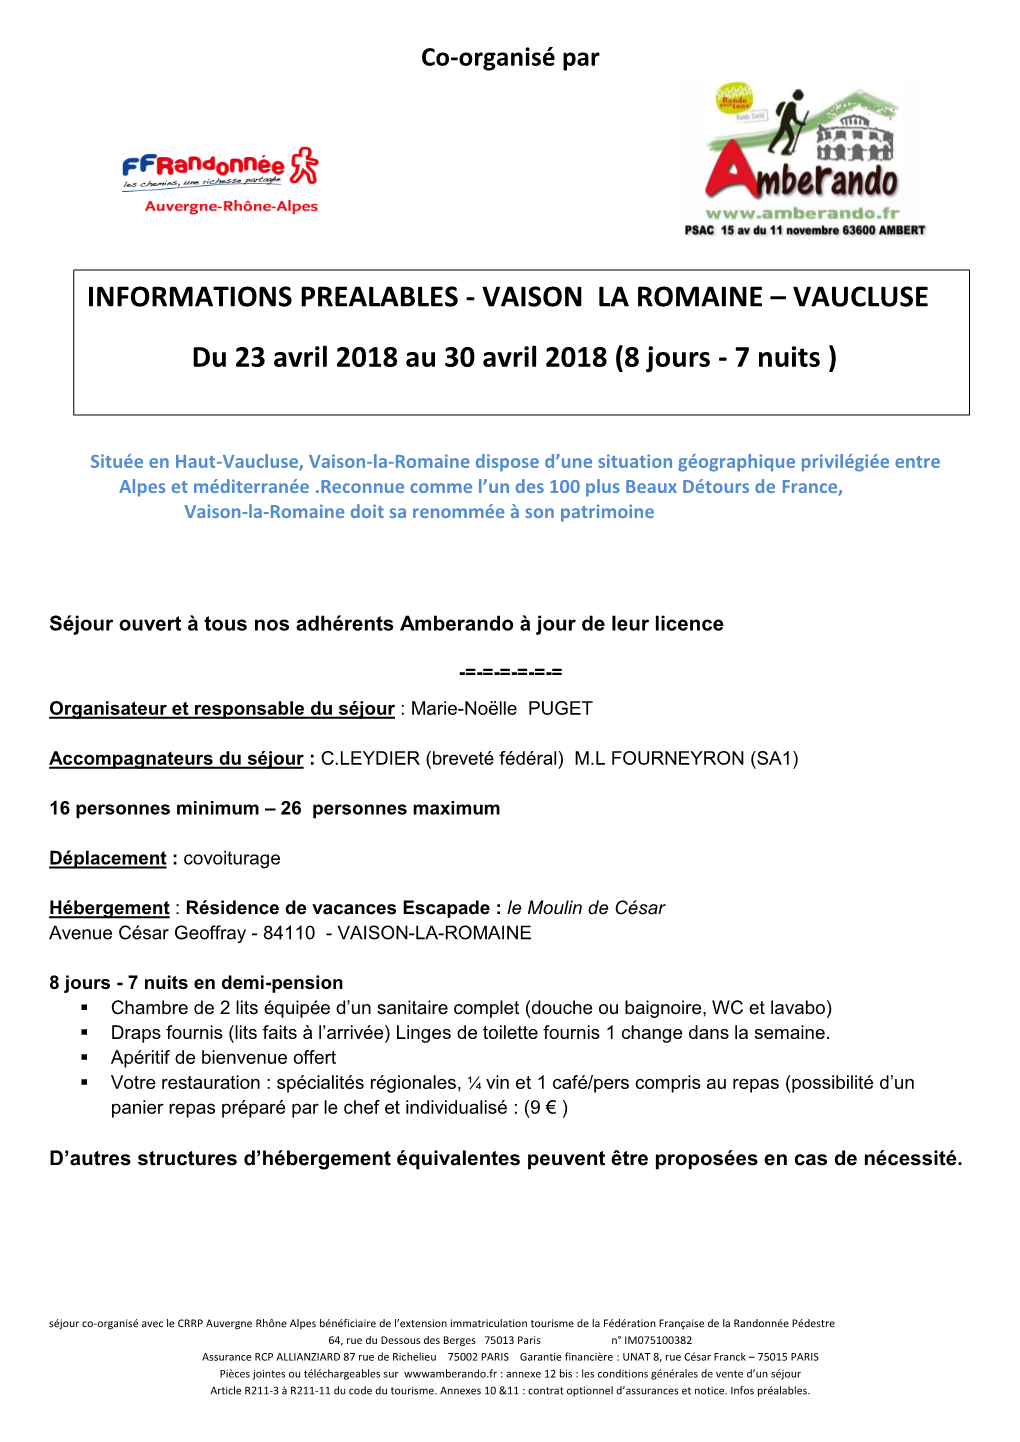 Vaison La Romaine – Vaucluse